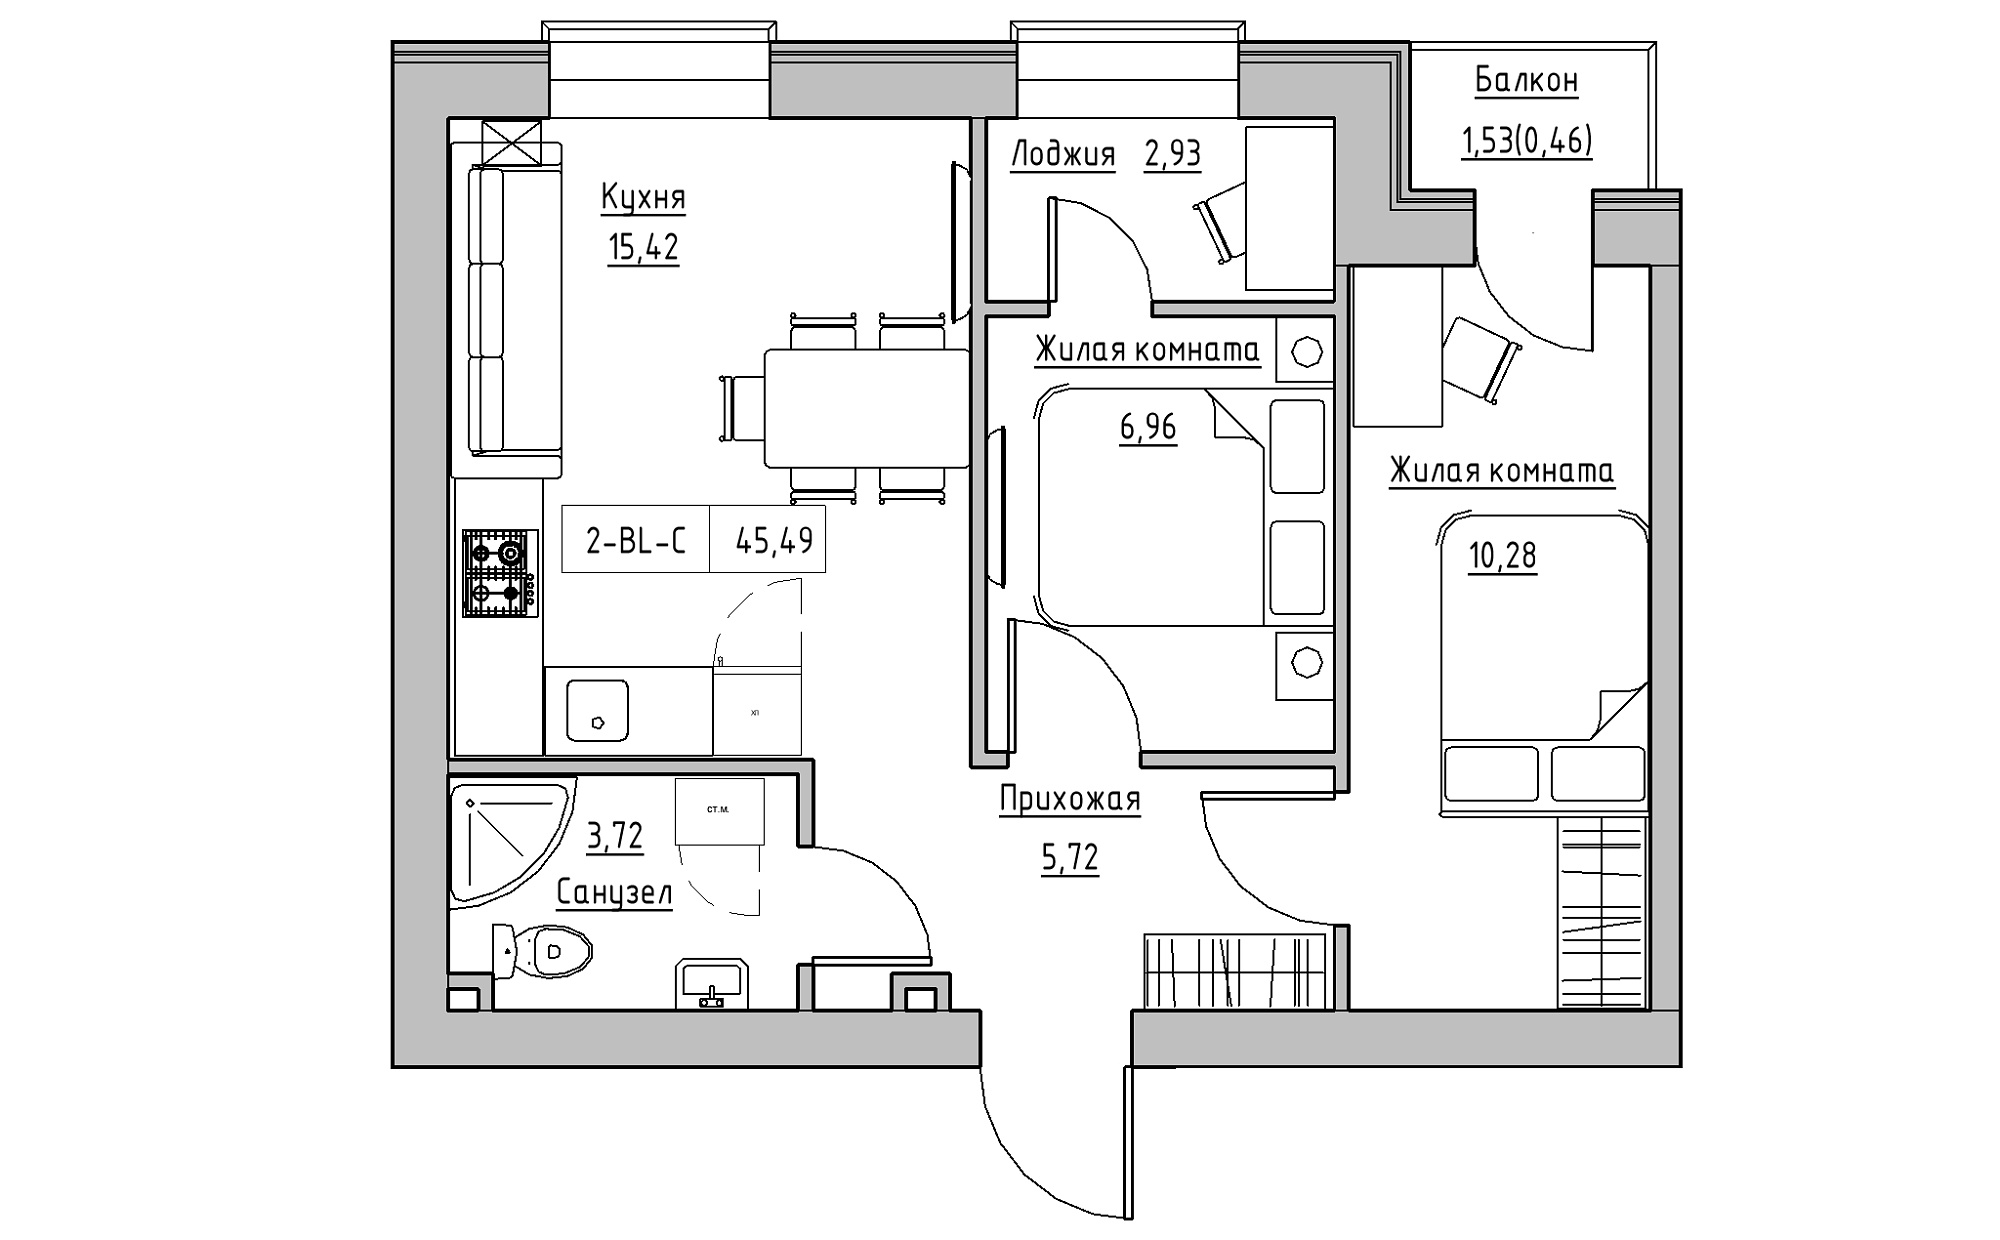 Планировка 2-к квартира площей 45.49м2, KS-022-03/0008.